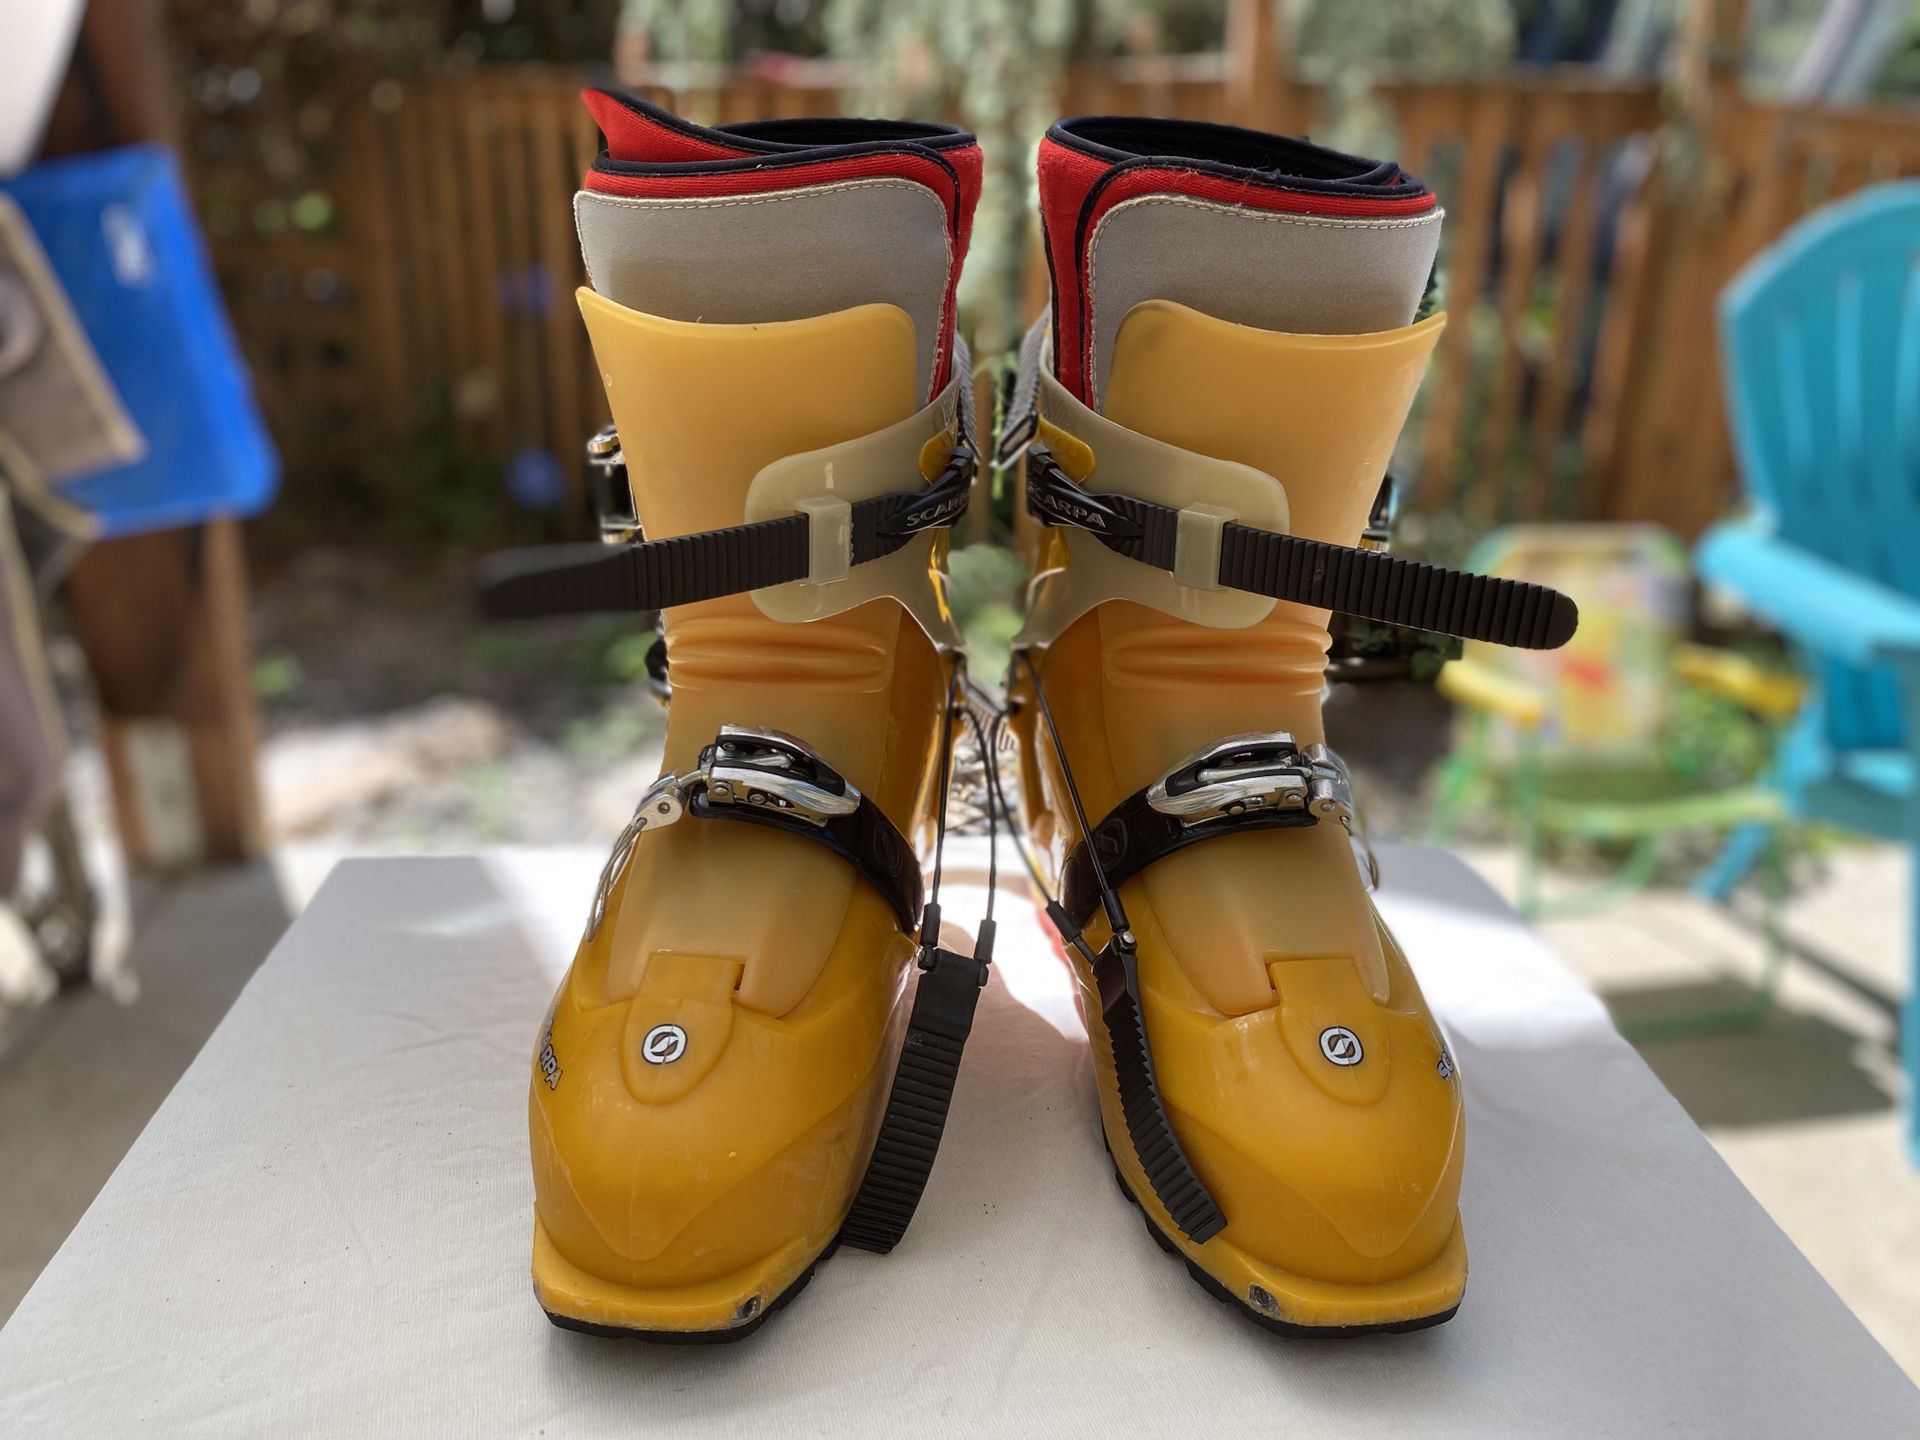 Scarpa Matrix Men’s Ski Boots